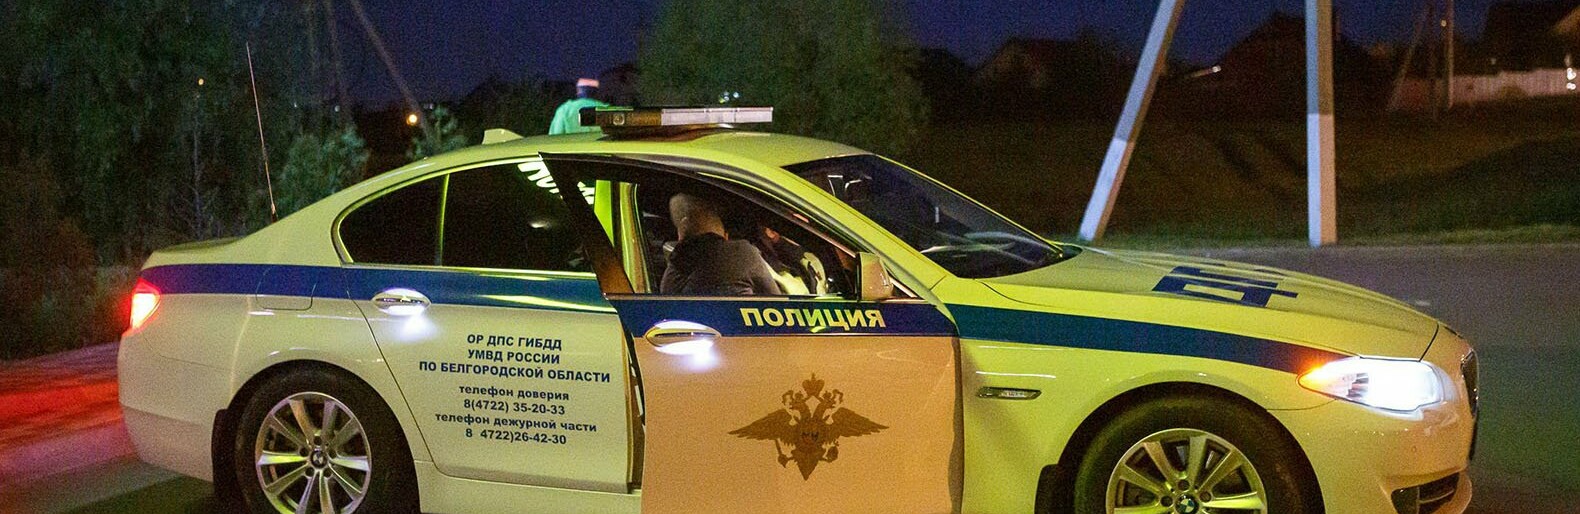 Белгородского полицейского уволили после пьяной езды с оружием и боеприпасами